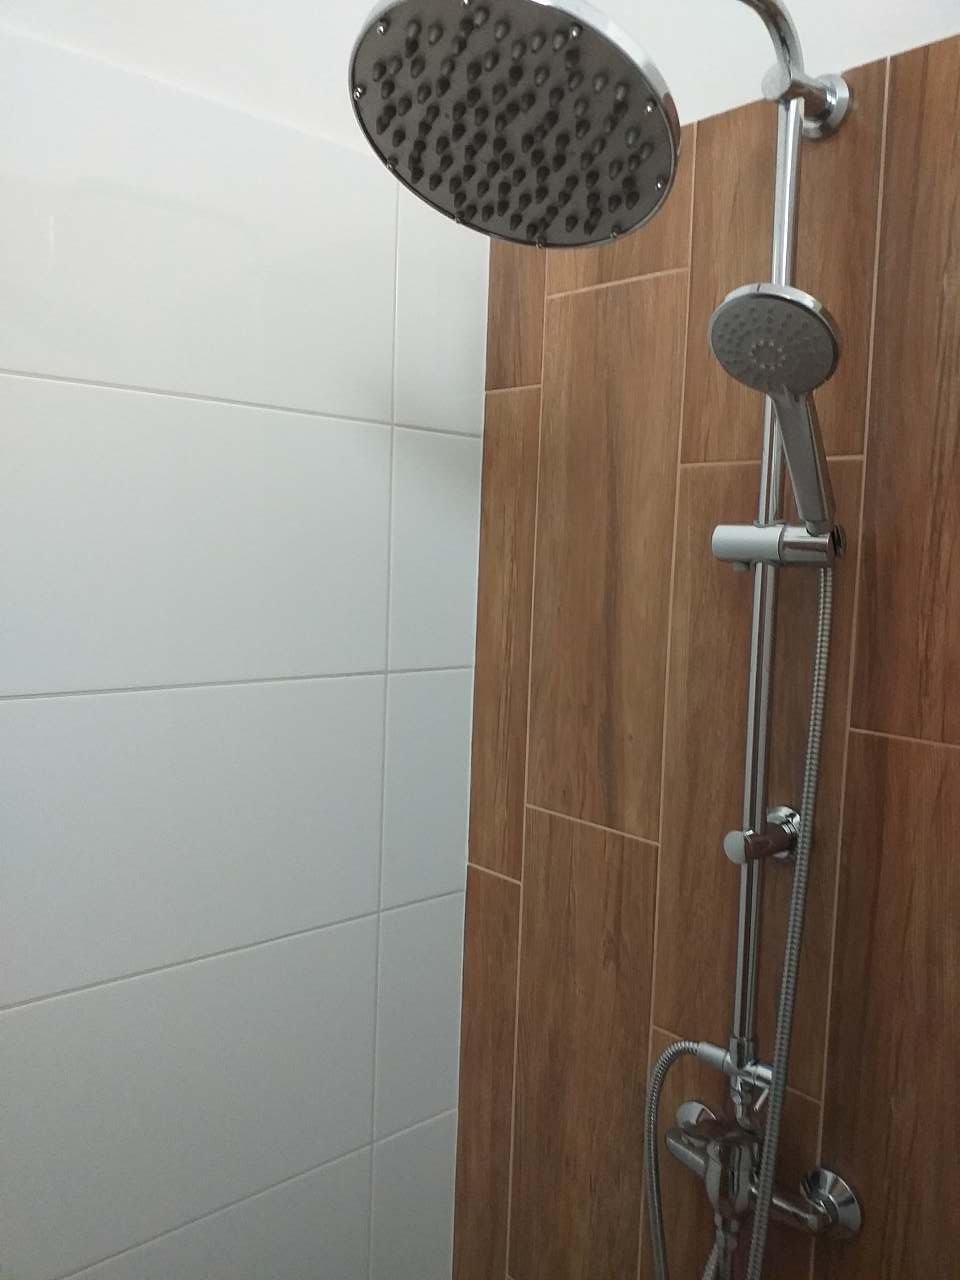 Sprchový kout